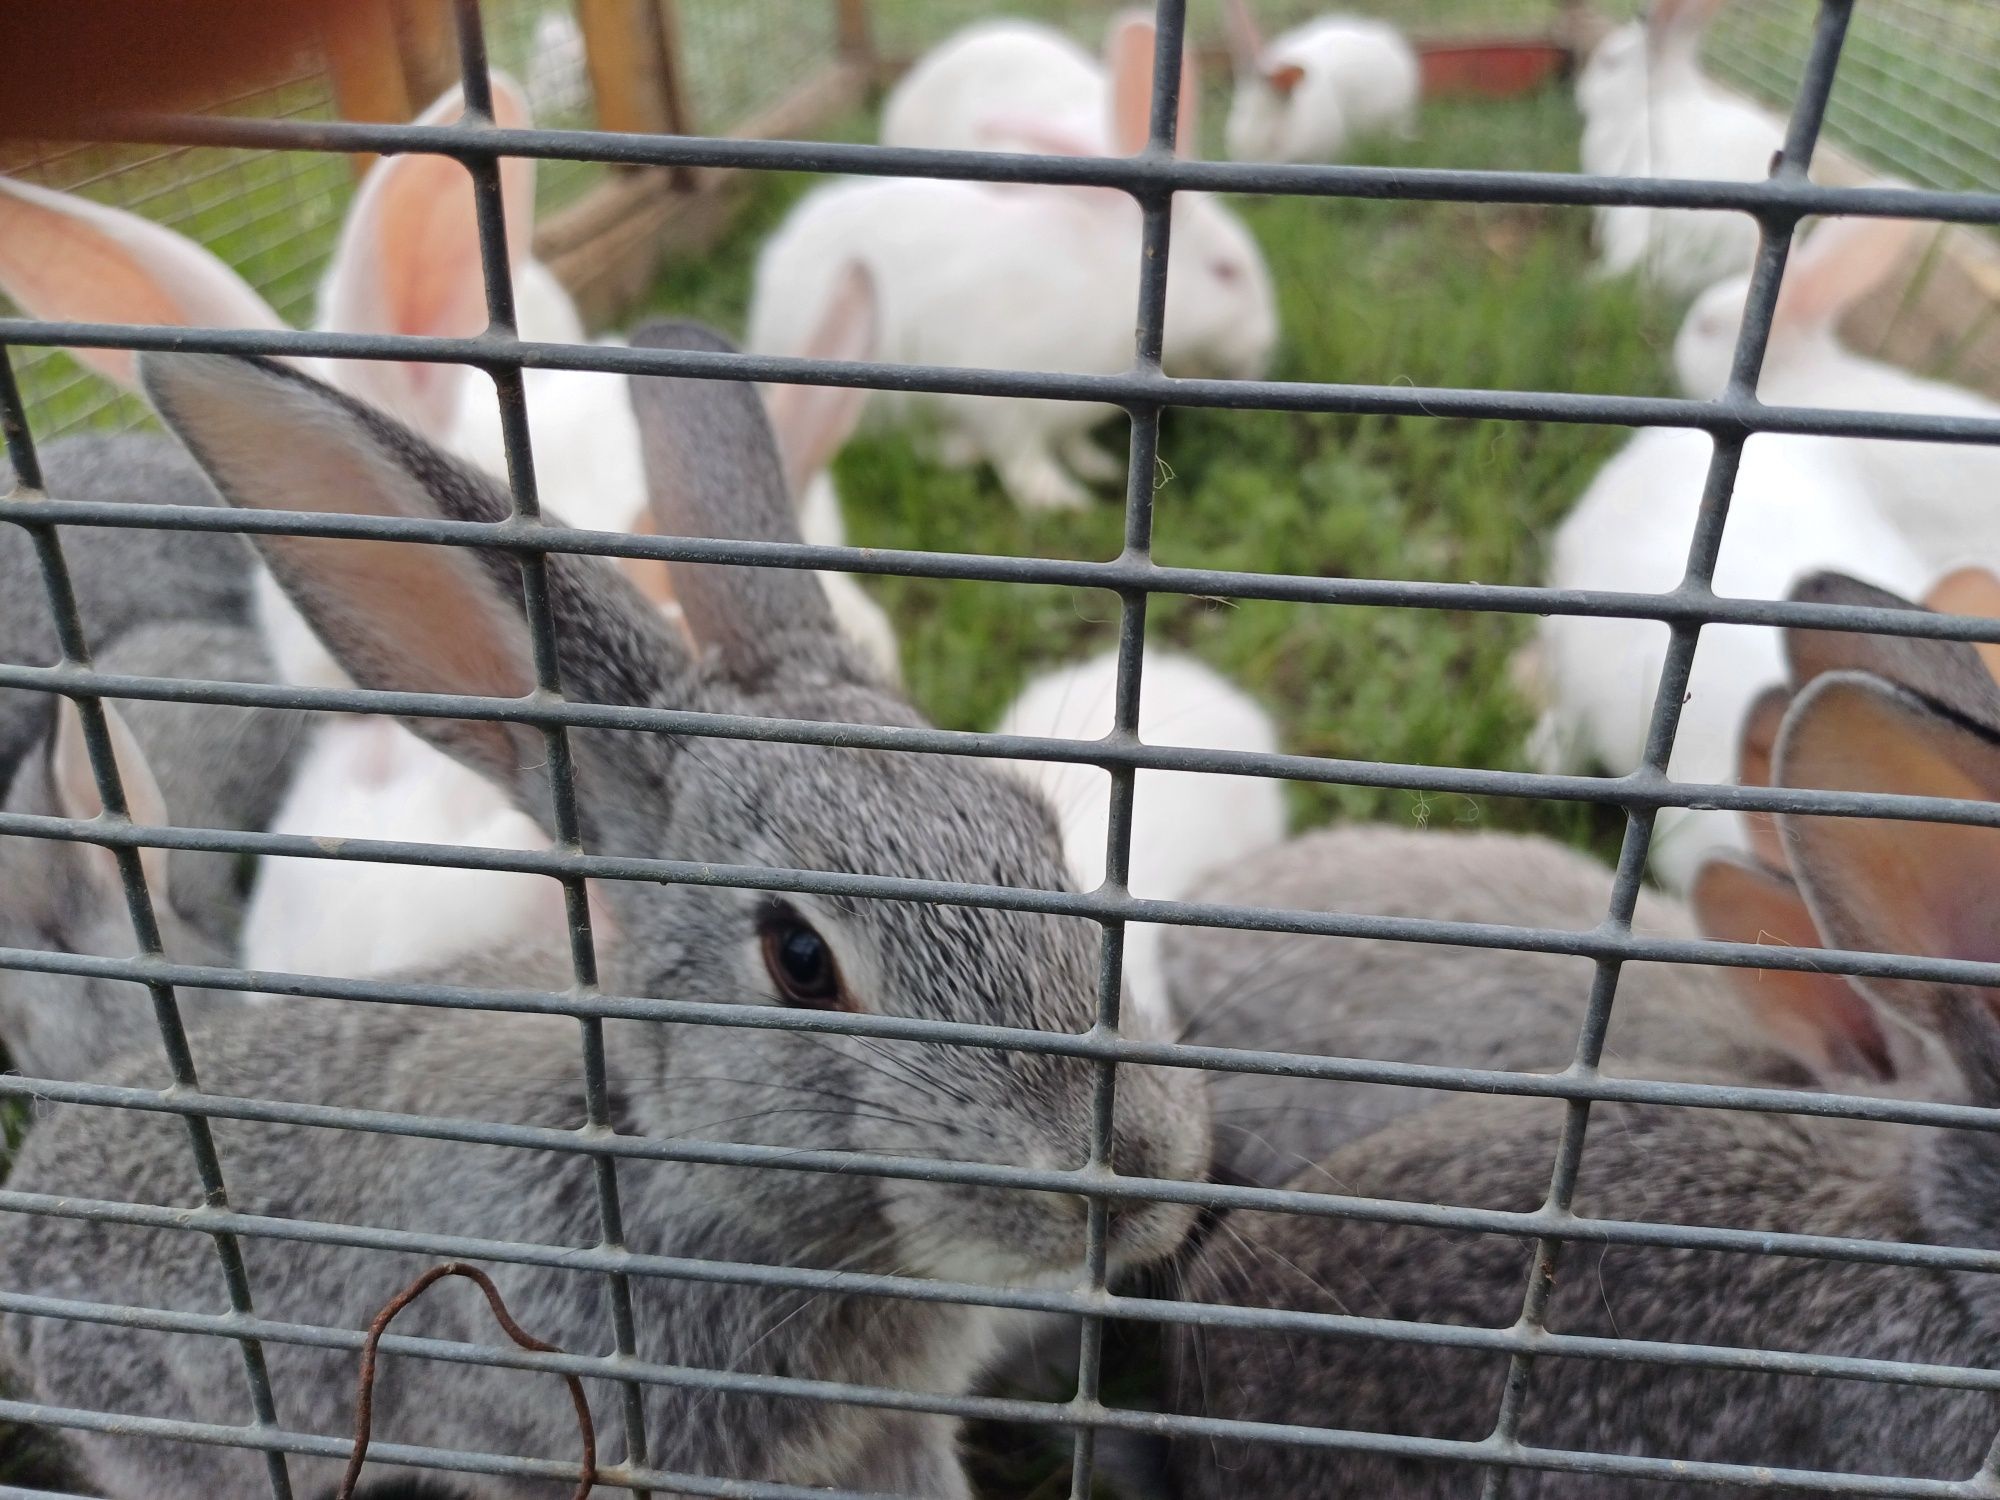 Продам кроликов разных возрастов и окраса